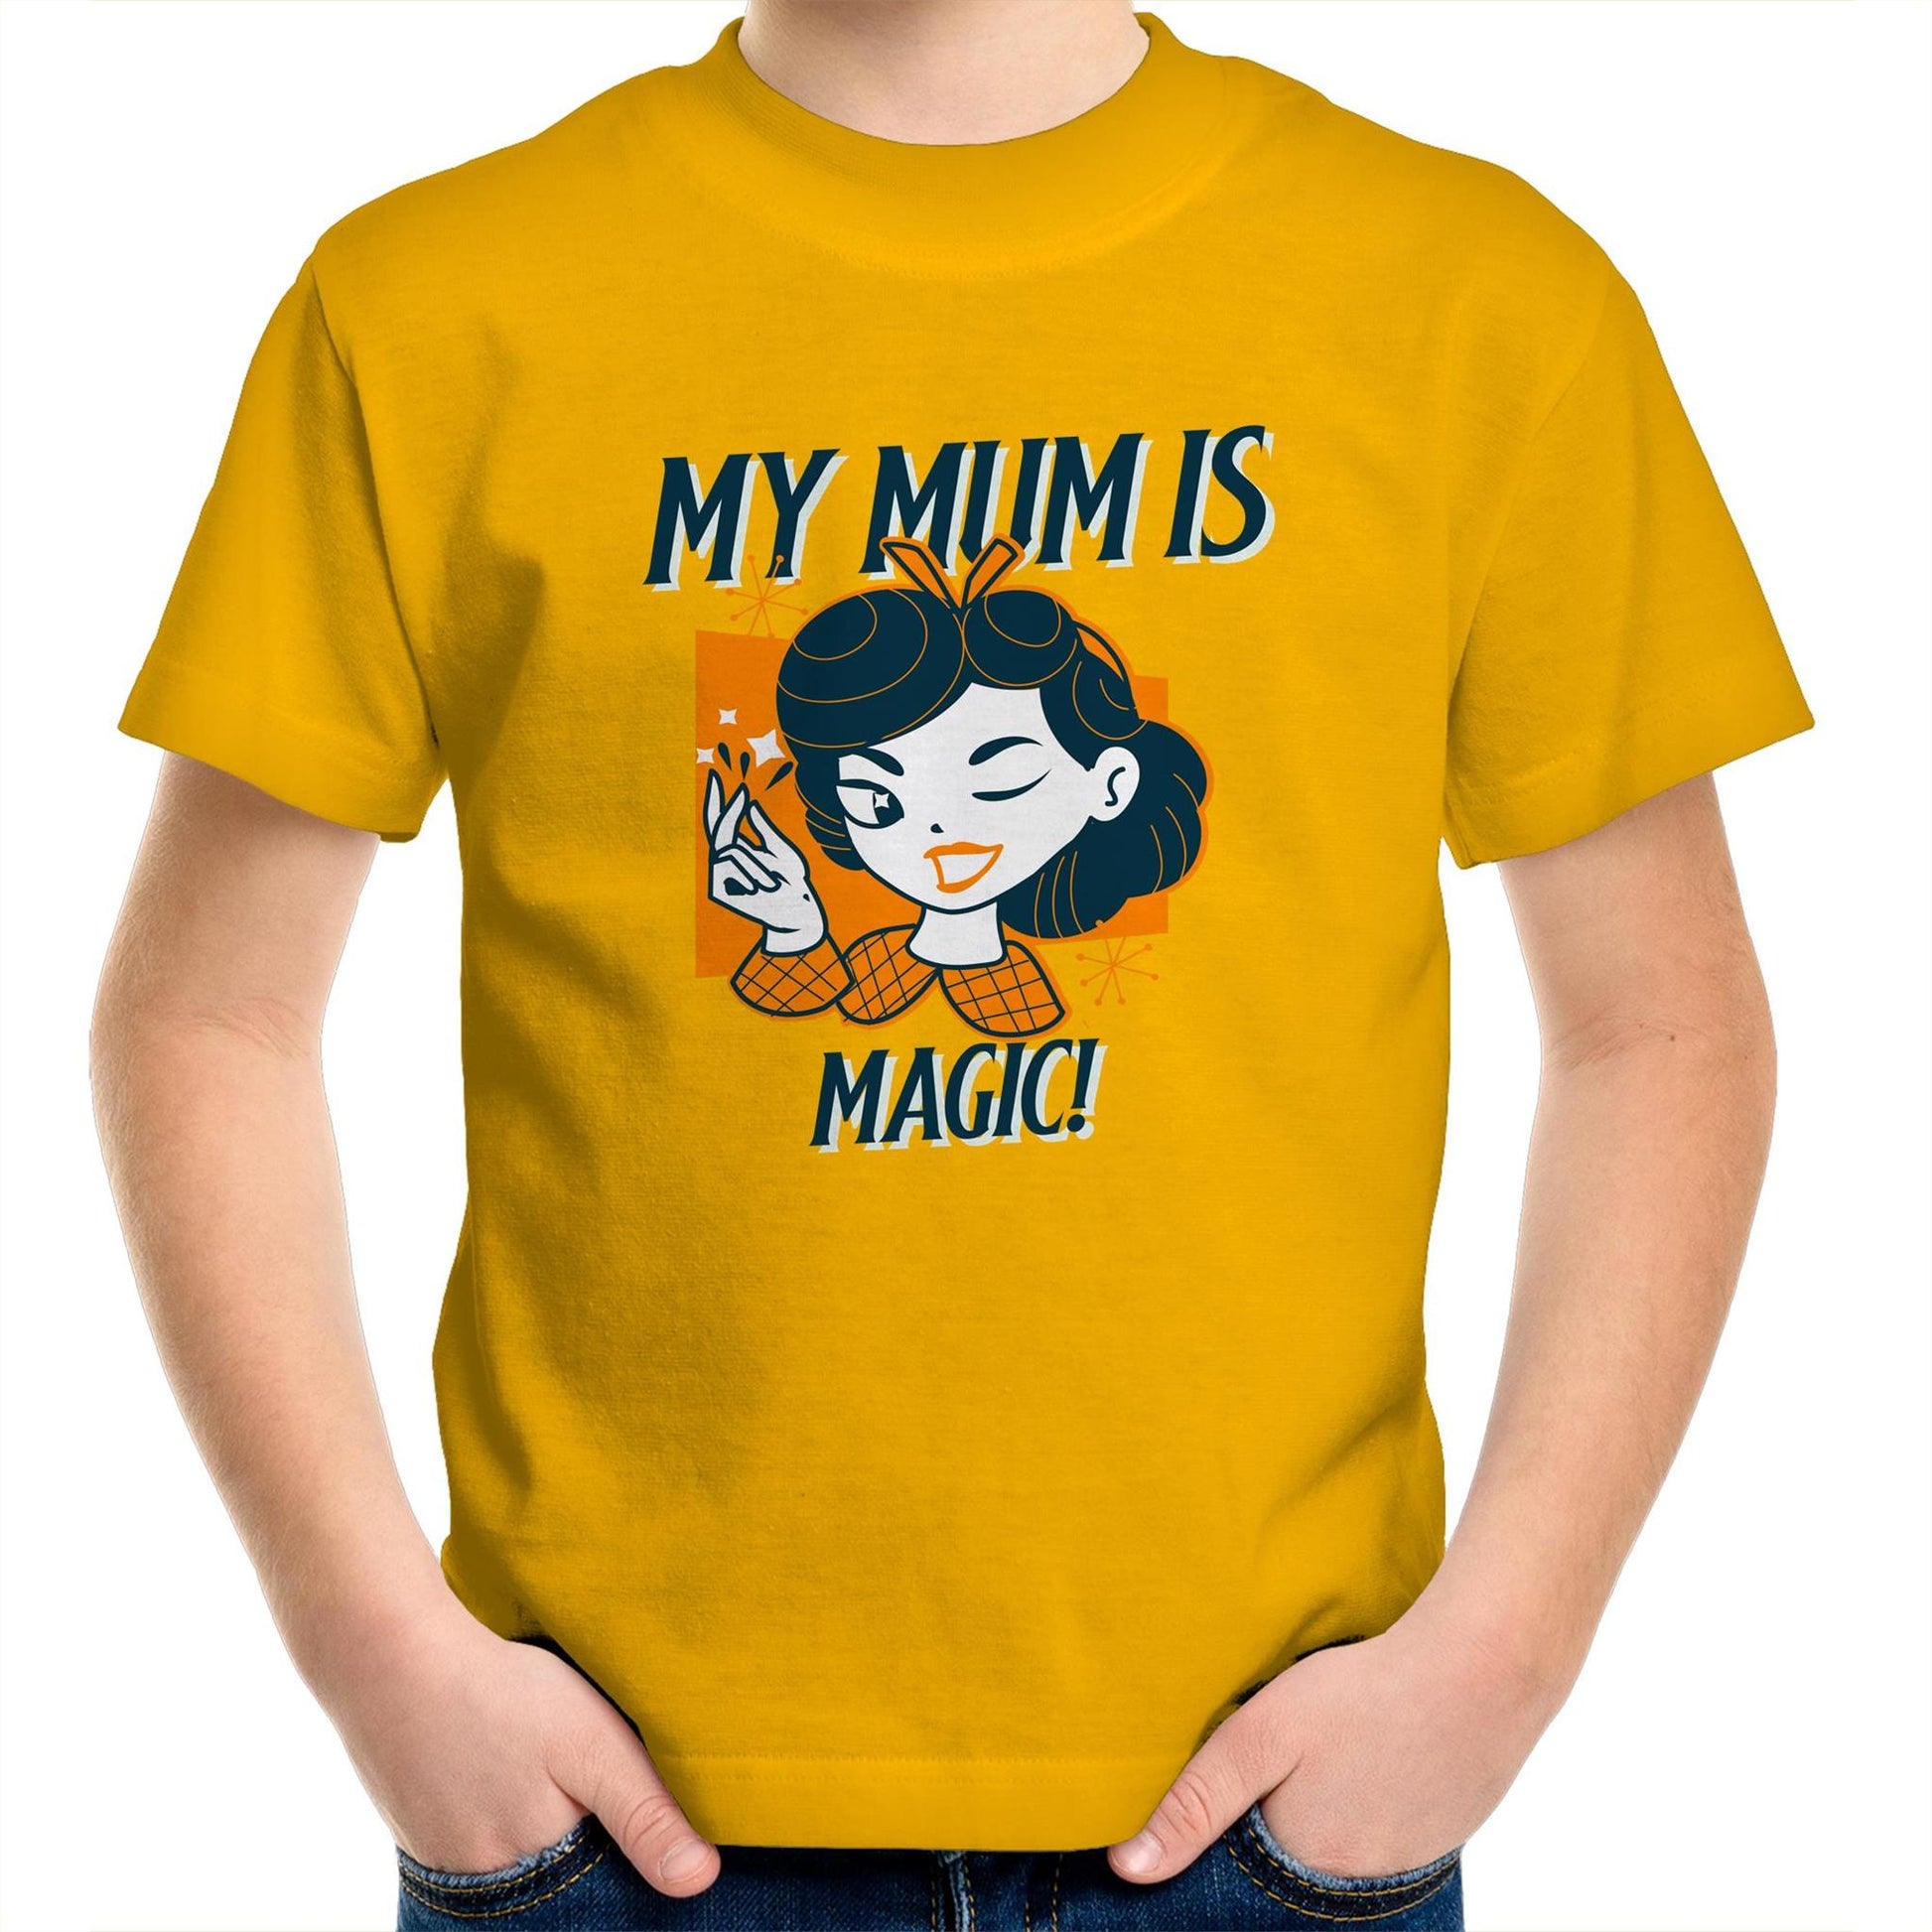 My Mum Is Magic - Kids Youth Crew T-Shirt Gold Kids Youth T-shirt Mum Retro